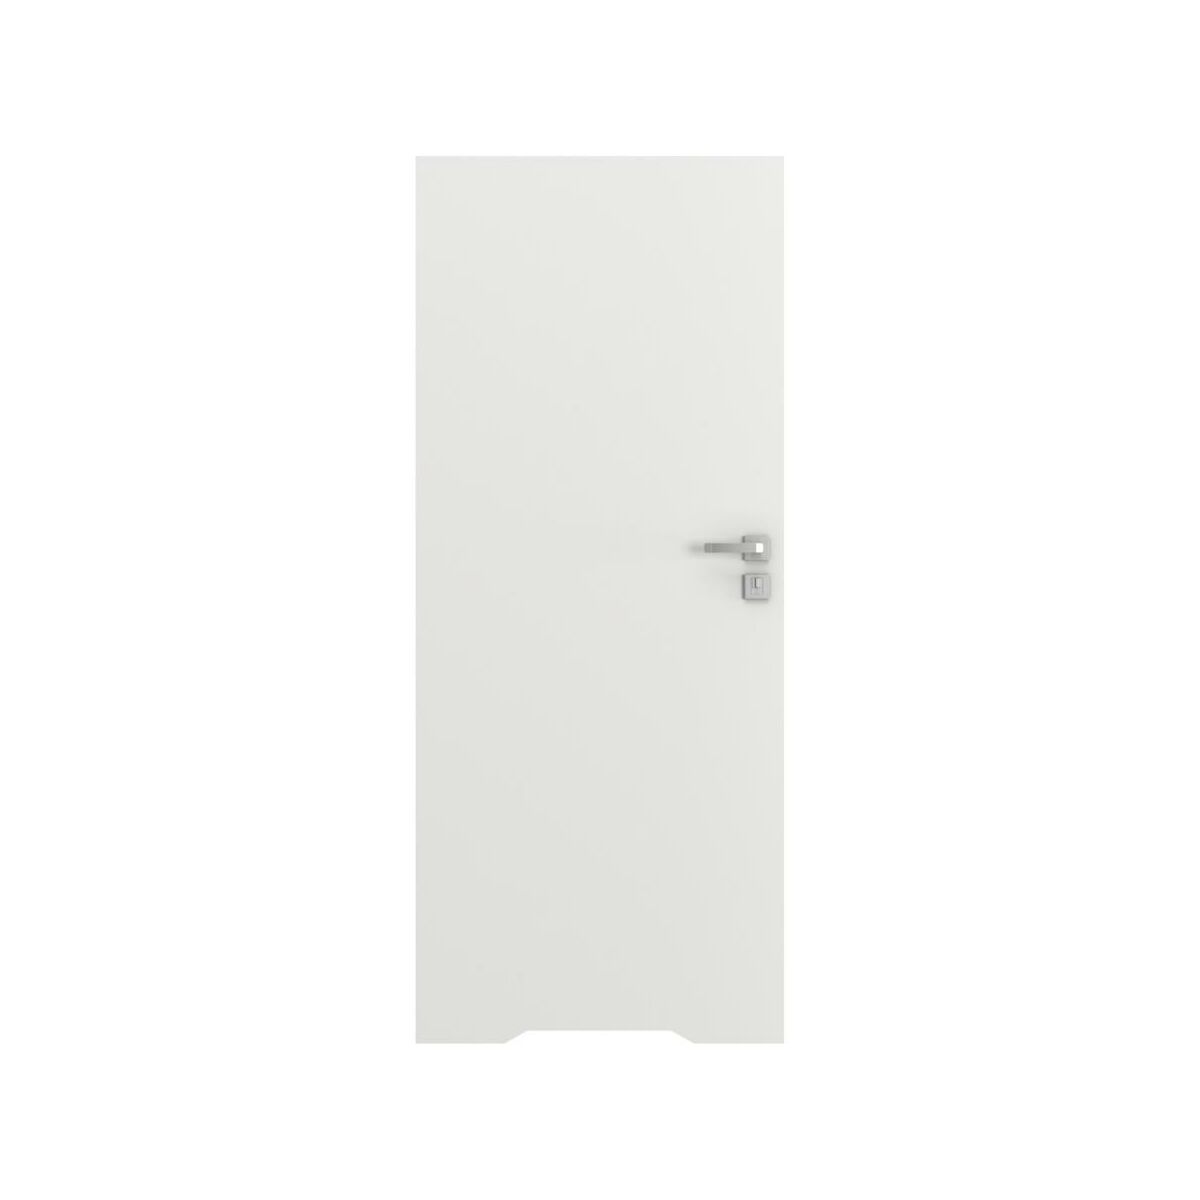 Drzwi wewnętrzne bezprzylgowe łazienkowe z podcięciem wentylacyjnym Vector T Białe 90 Lewe Porta